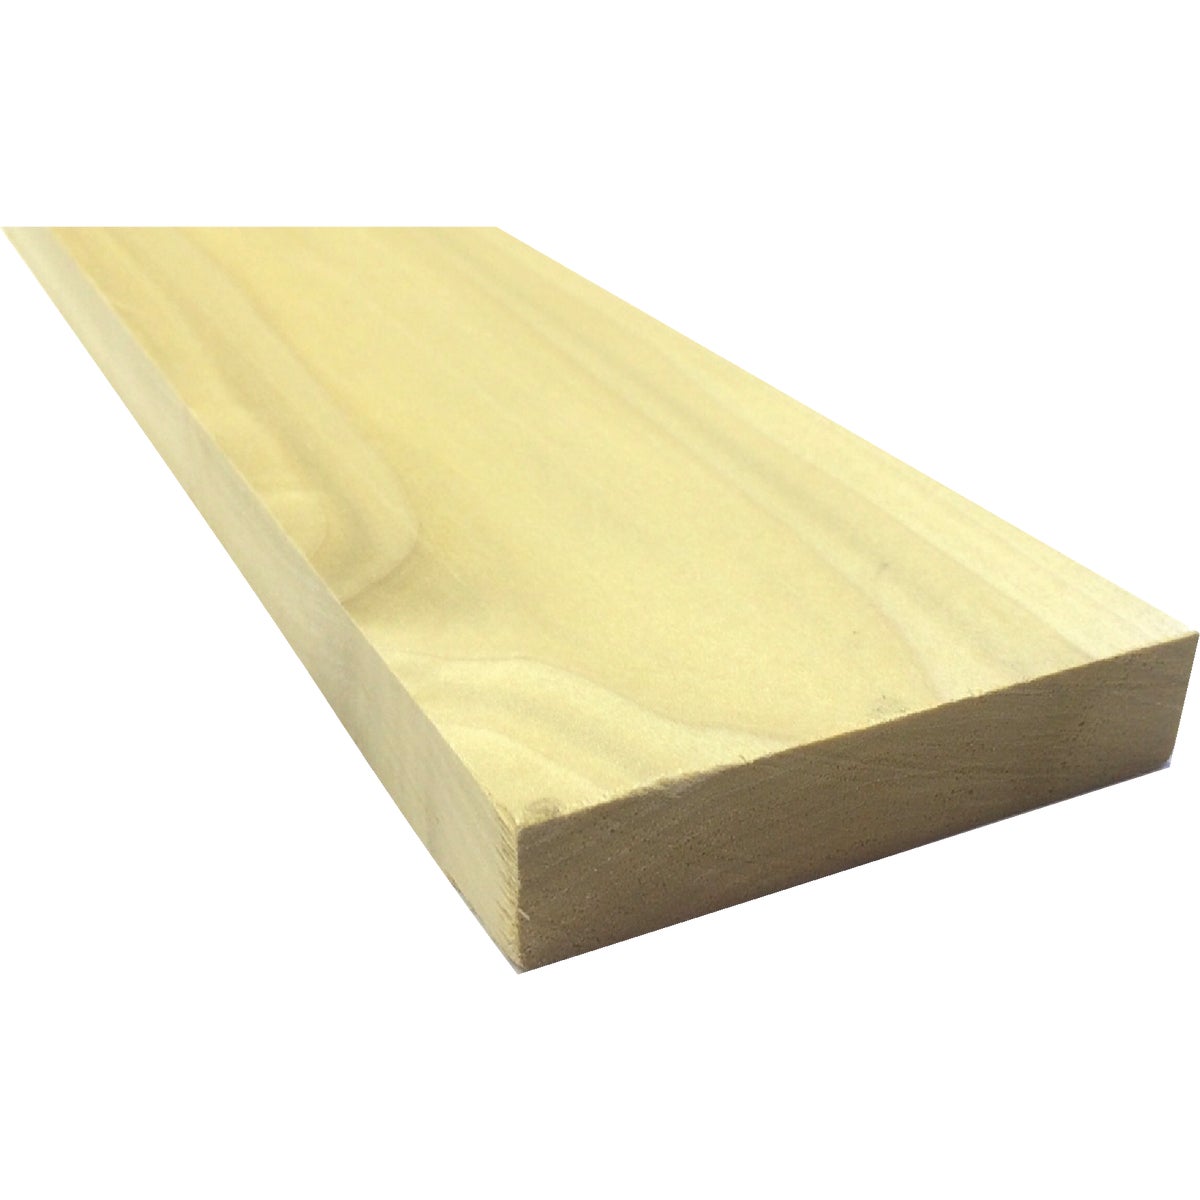 Waddell 1 In. x 4 In. x 8 Ft. Poplar Wood Board